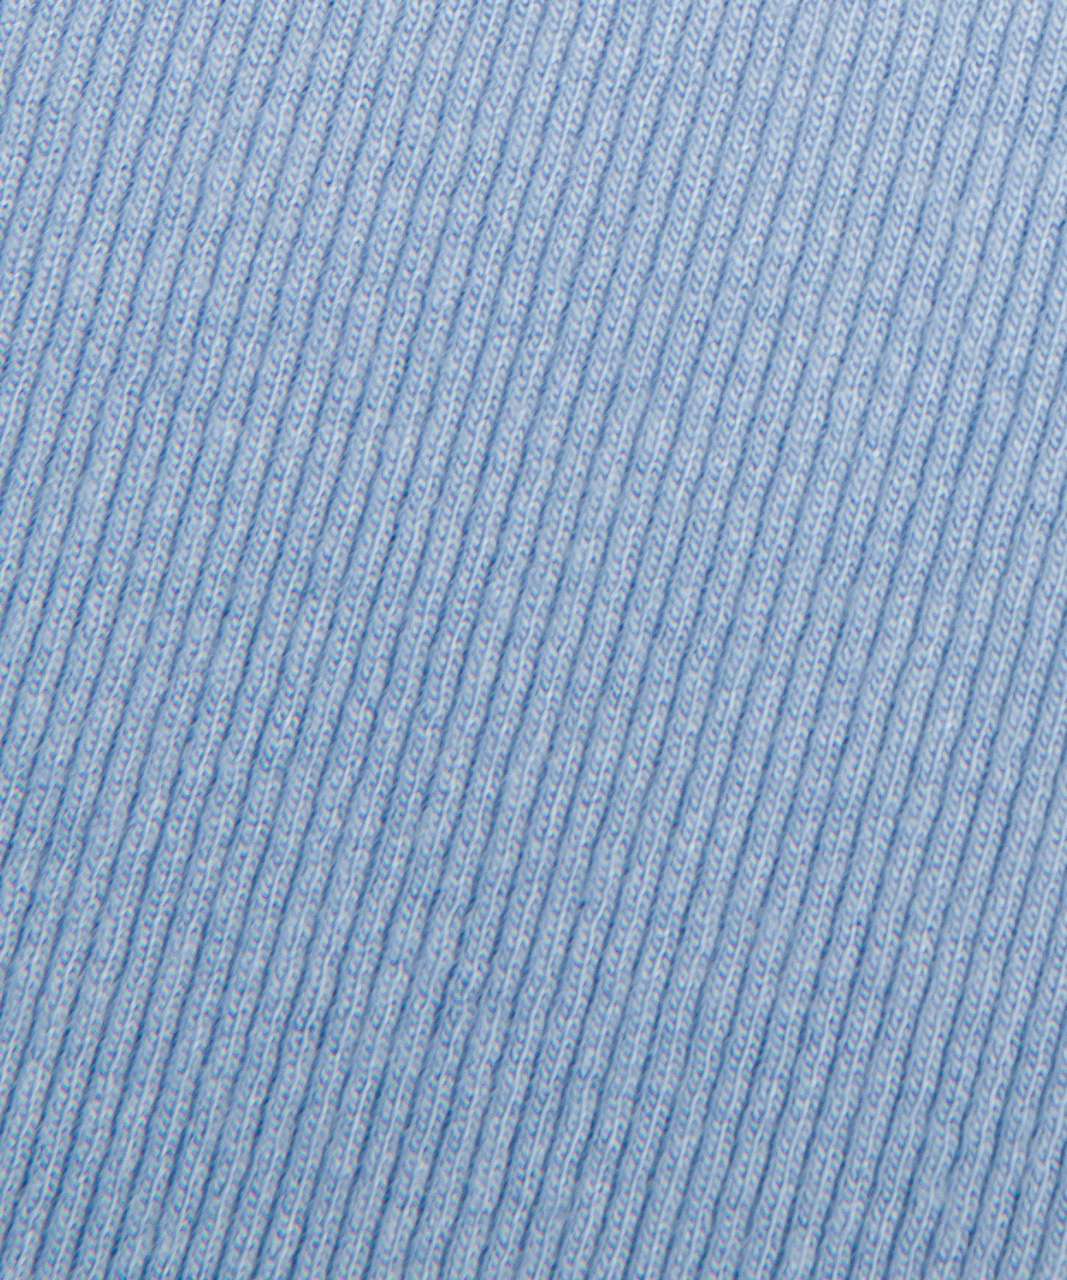 Lululemon Hold Tight Short-Sleeve Shirt - Aero Blue